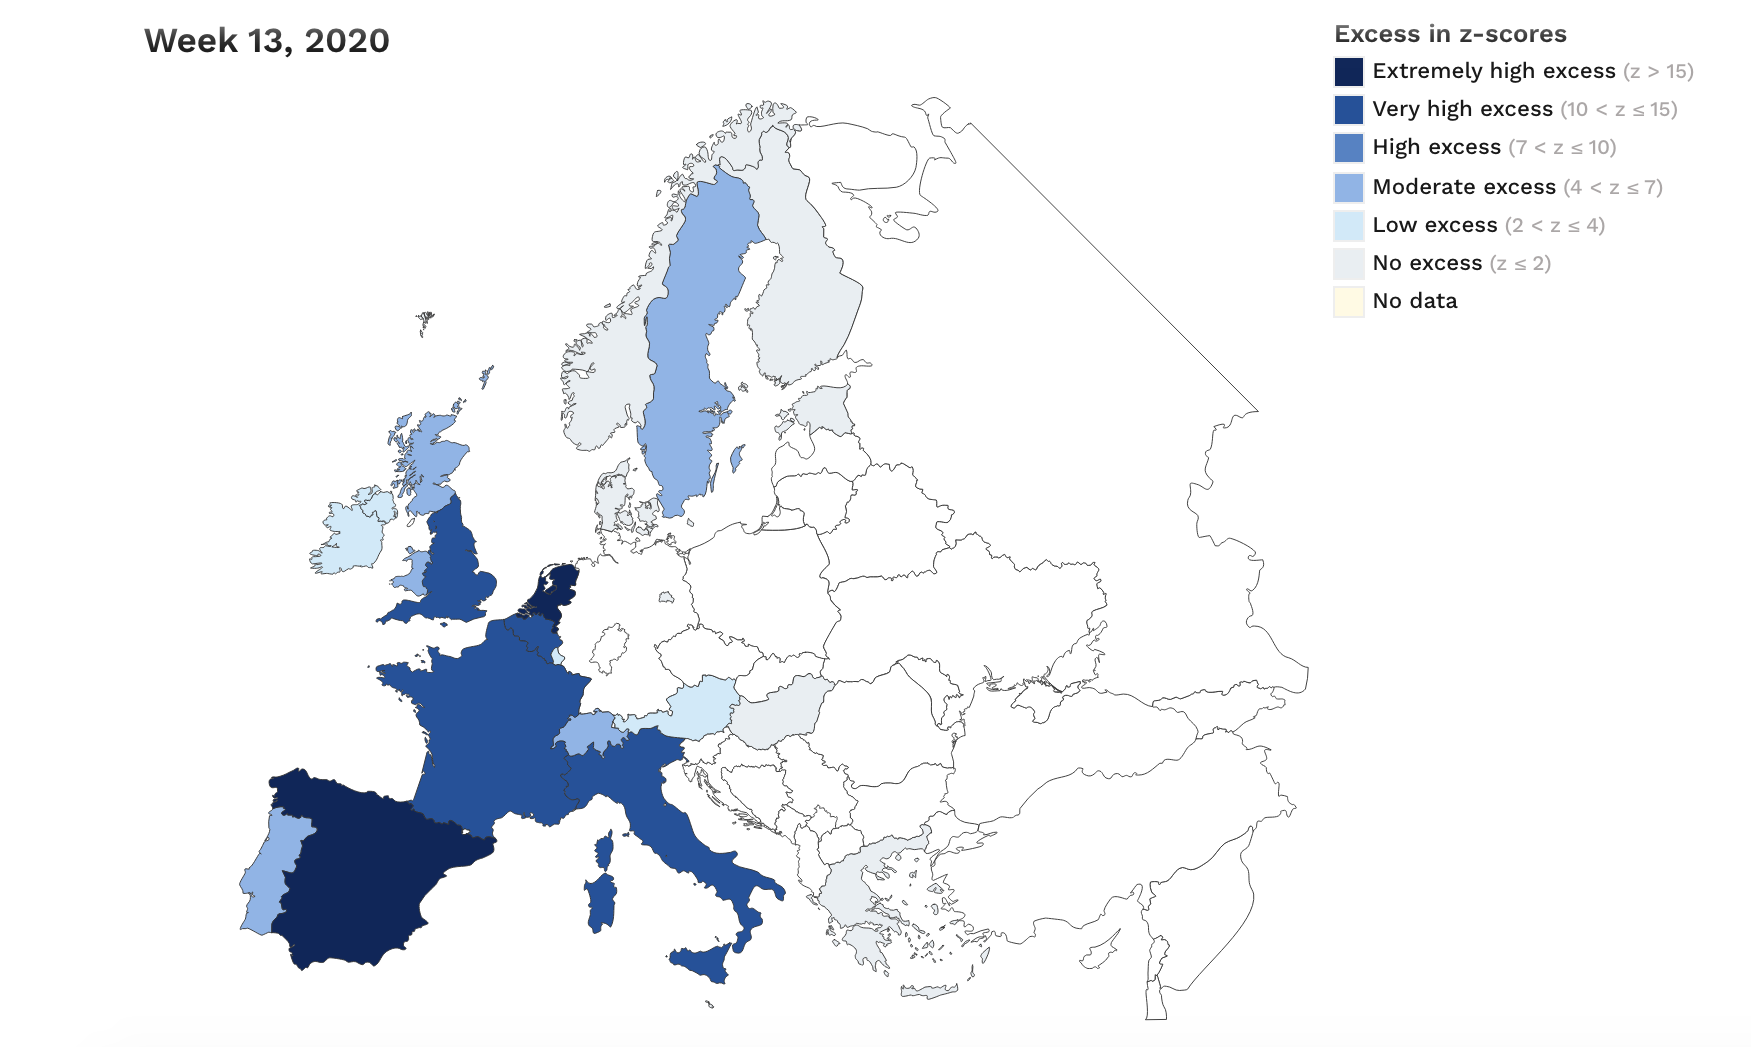 4-euromomo-exceso-mortalidad-covid-19-espana-europa.png